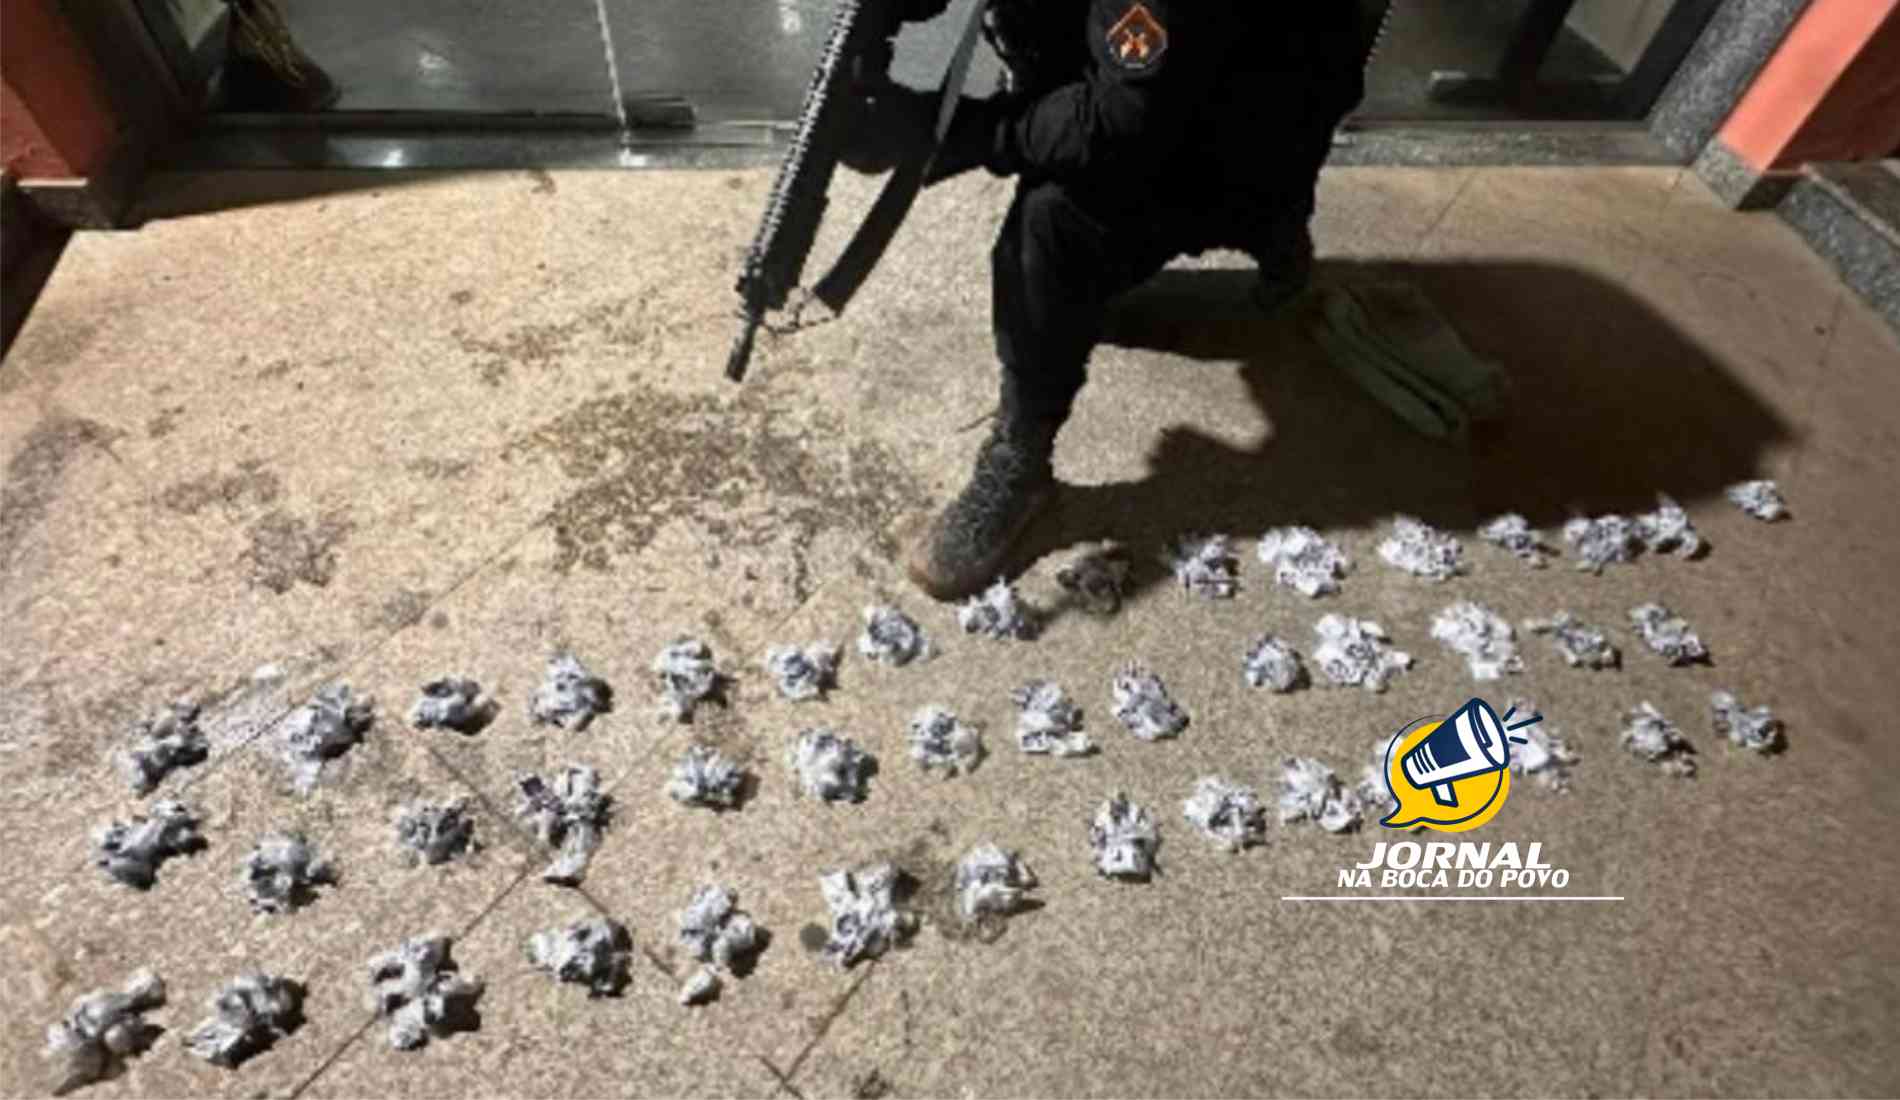 Militares do 36°BPM apreende mais de 430 pinos de cocaína no bairro Cidade Nova em Pádua